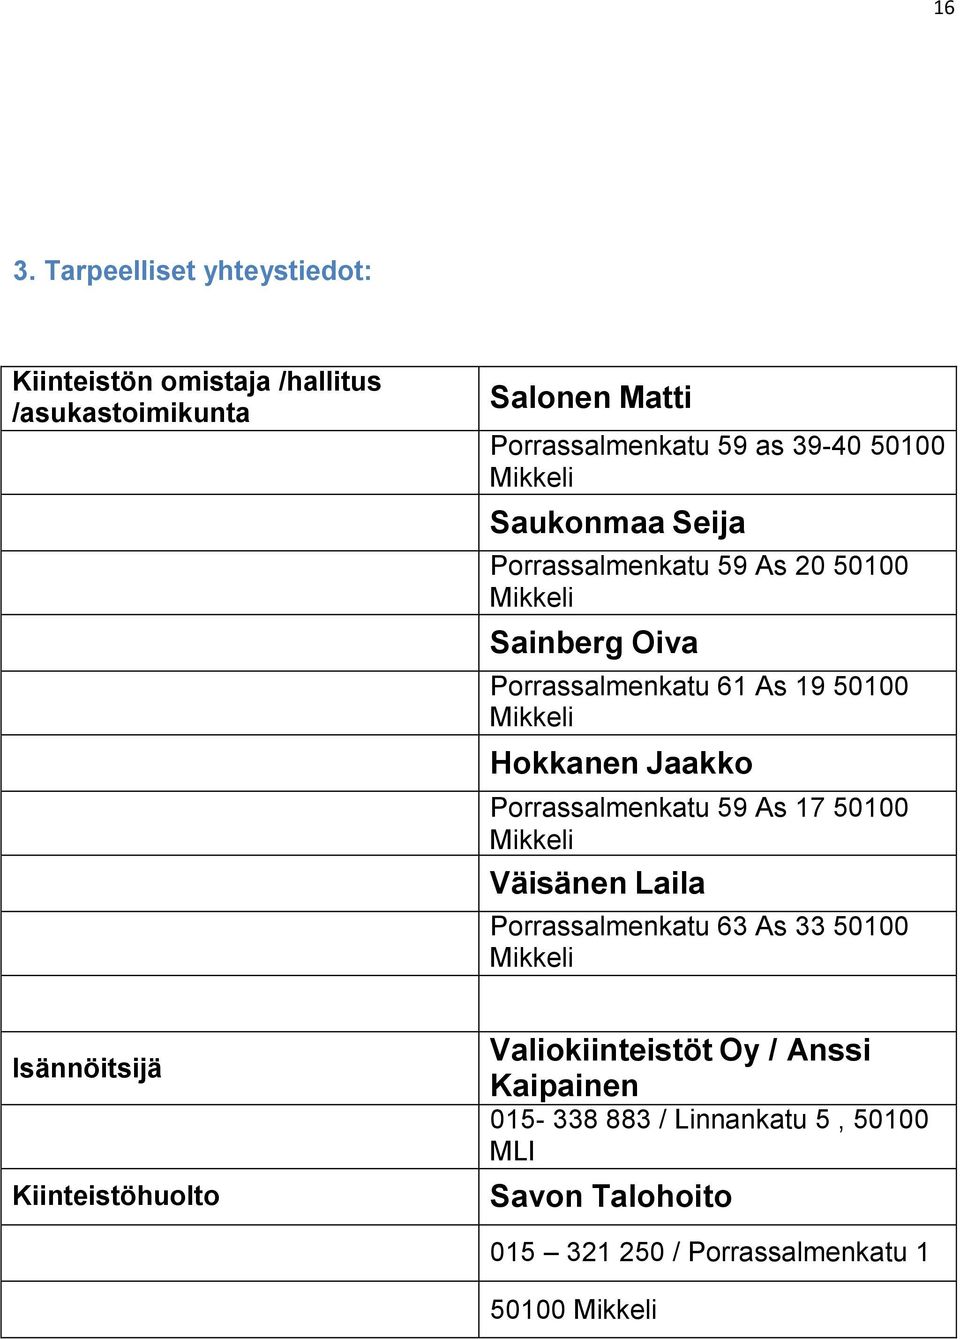 Jaakko Porrassalmenkatu 59 As 17 50100 Mikkeli Väisänen Laila Porrassalmenkatu 63 As 33 50100 Mikkeli Isännöitsijä Kiinteistöhuolto